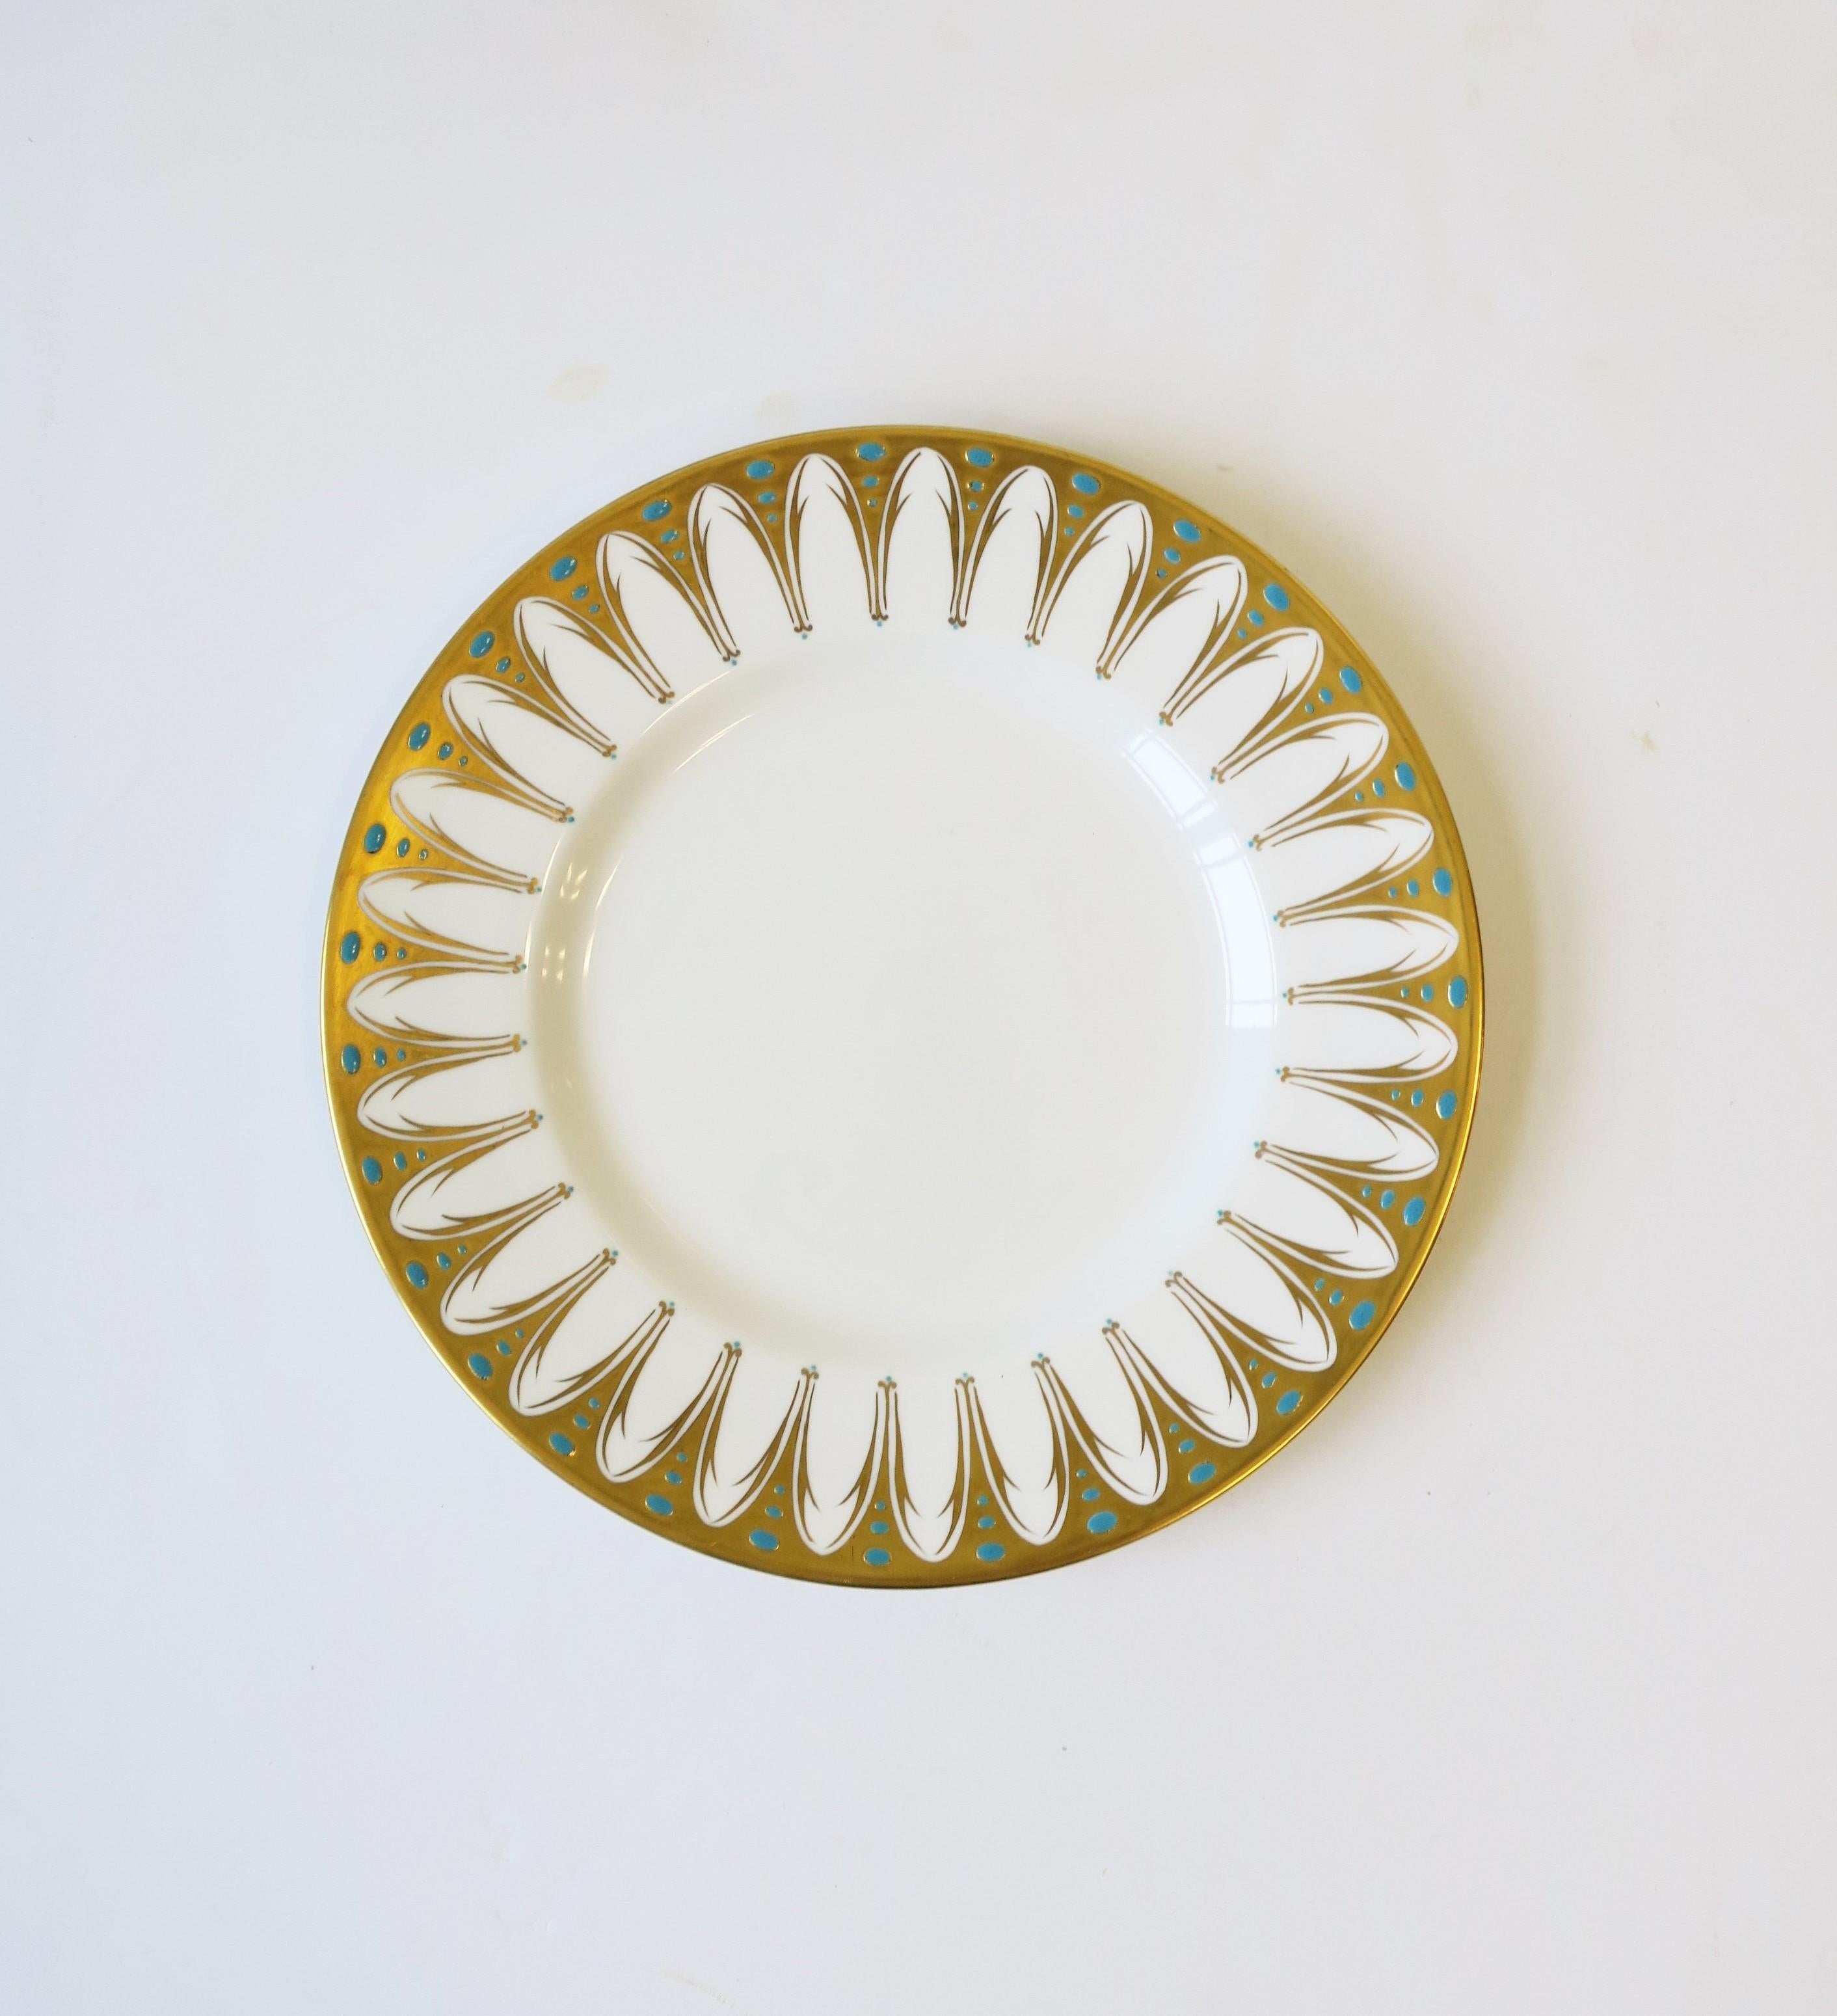 Magnifique assiette à dîner en porcelaine anglaise fabriquée par Royal Chelsea, vers le début ou le milieu du 20e siècle, années 1940-1960, Angleterre. L'assiette est décorée d'or 22 carats et de petits points bleu turquoise, en relief, sur un fond